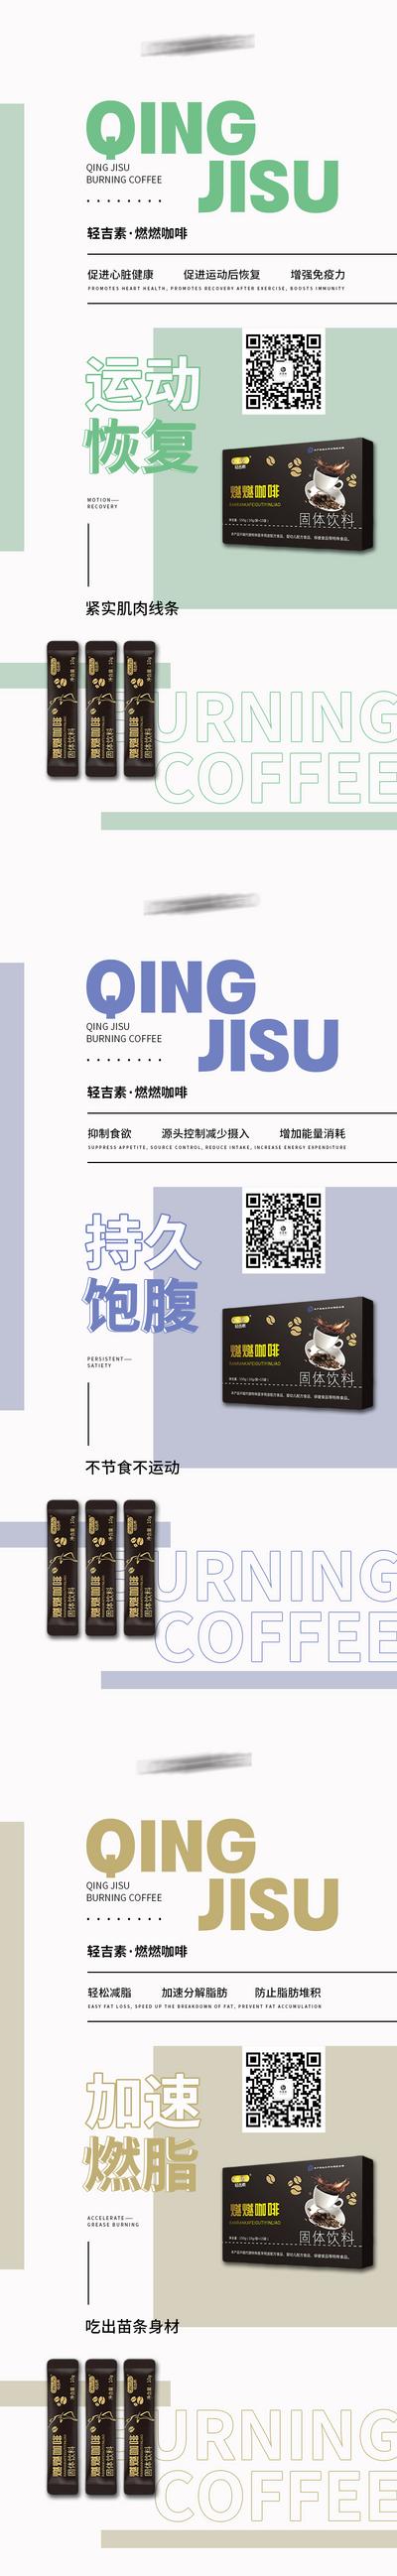 南门网 广告 海报 微商 减肥 瘦身 塑形 代餐 咖啡 新零售 产品 保健品